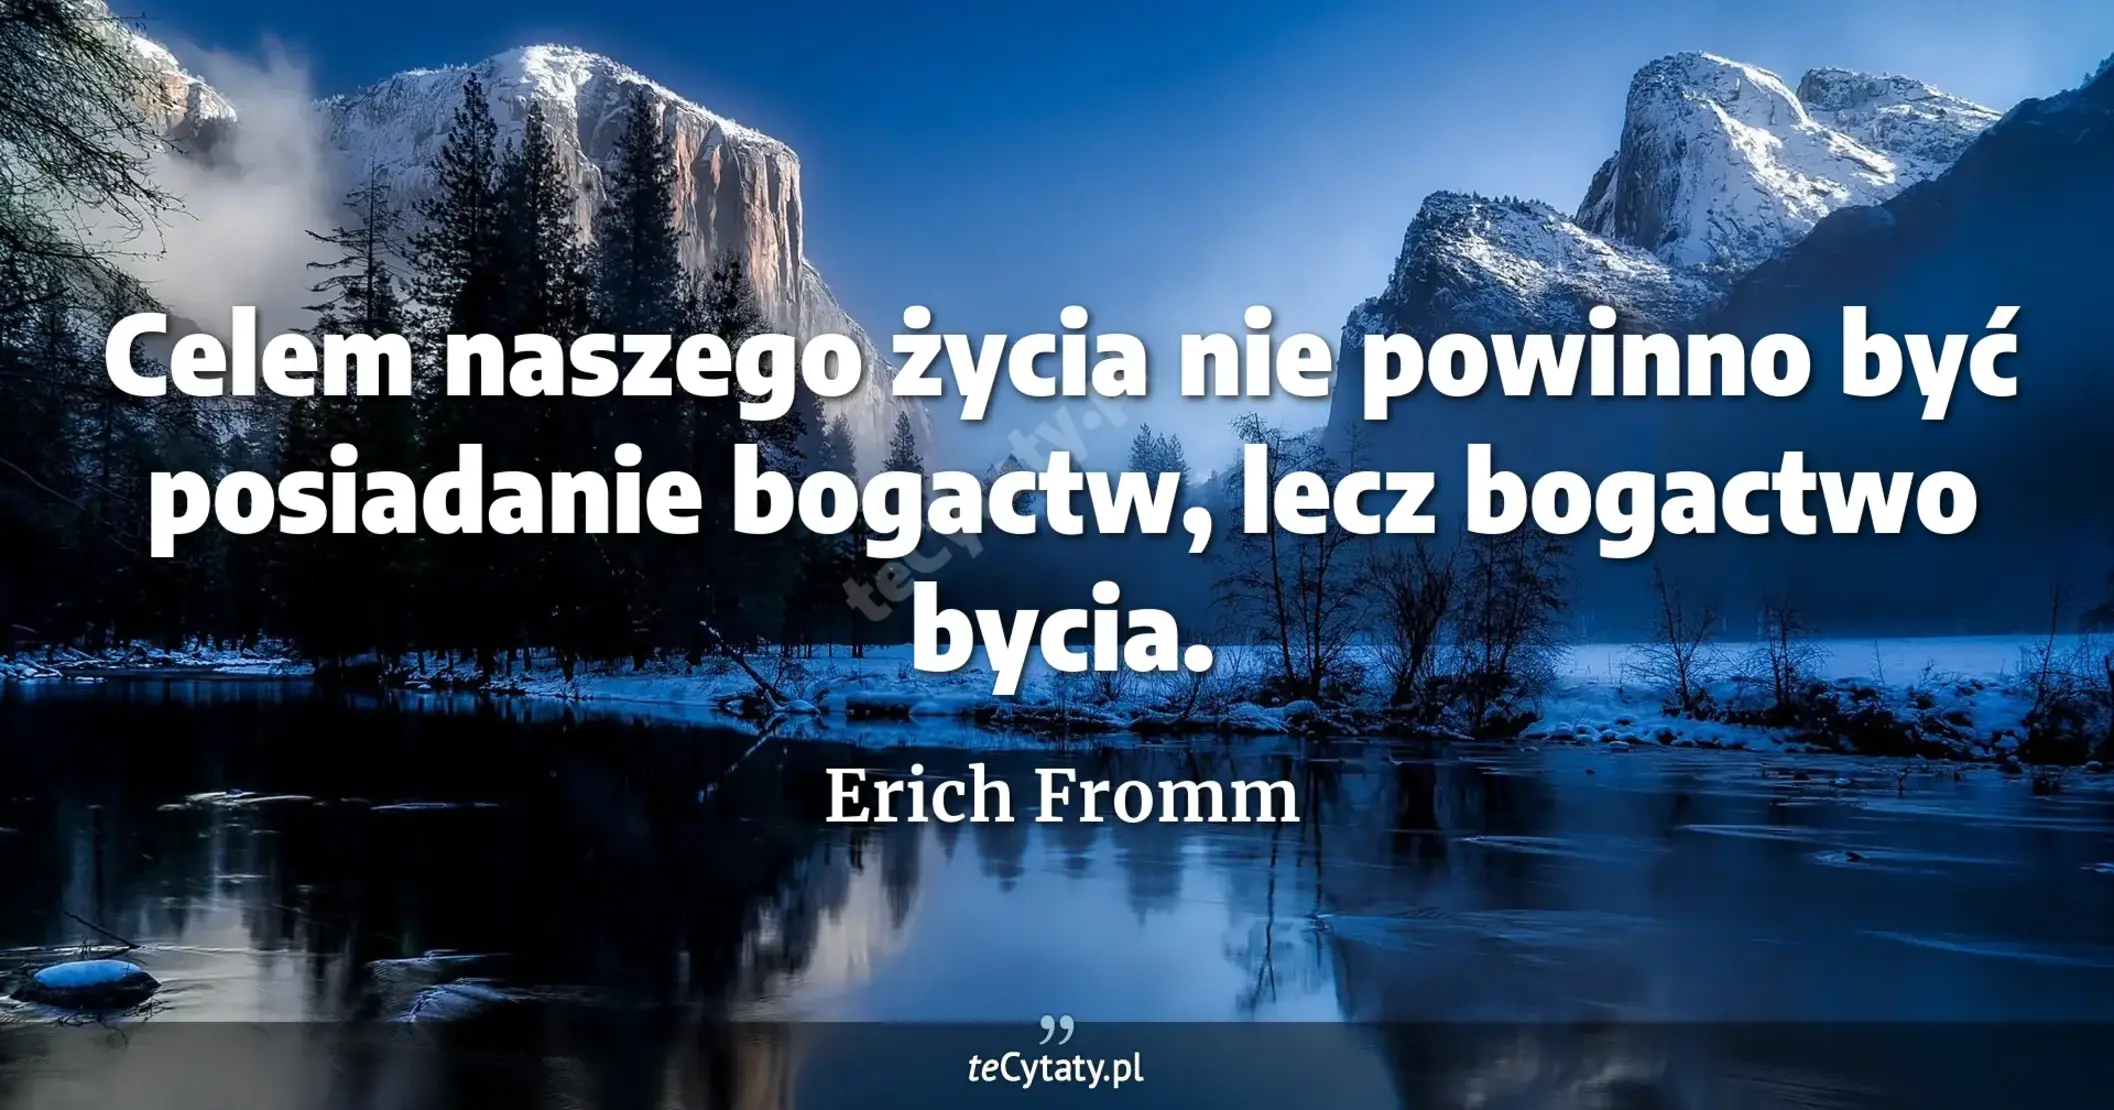 Celem naszego życia nie powinno być posiadanie bogactw, lecz bogactwo bycia. - Erich Fromm